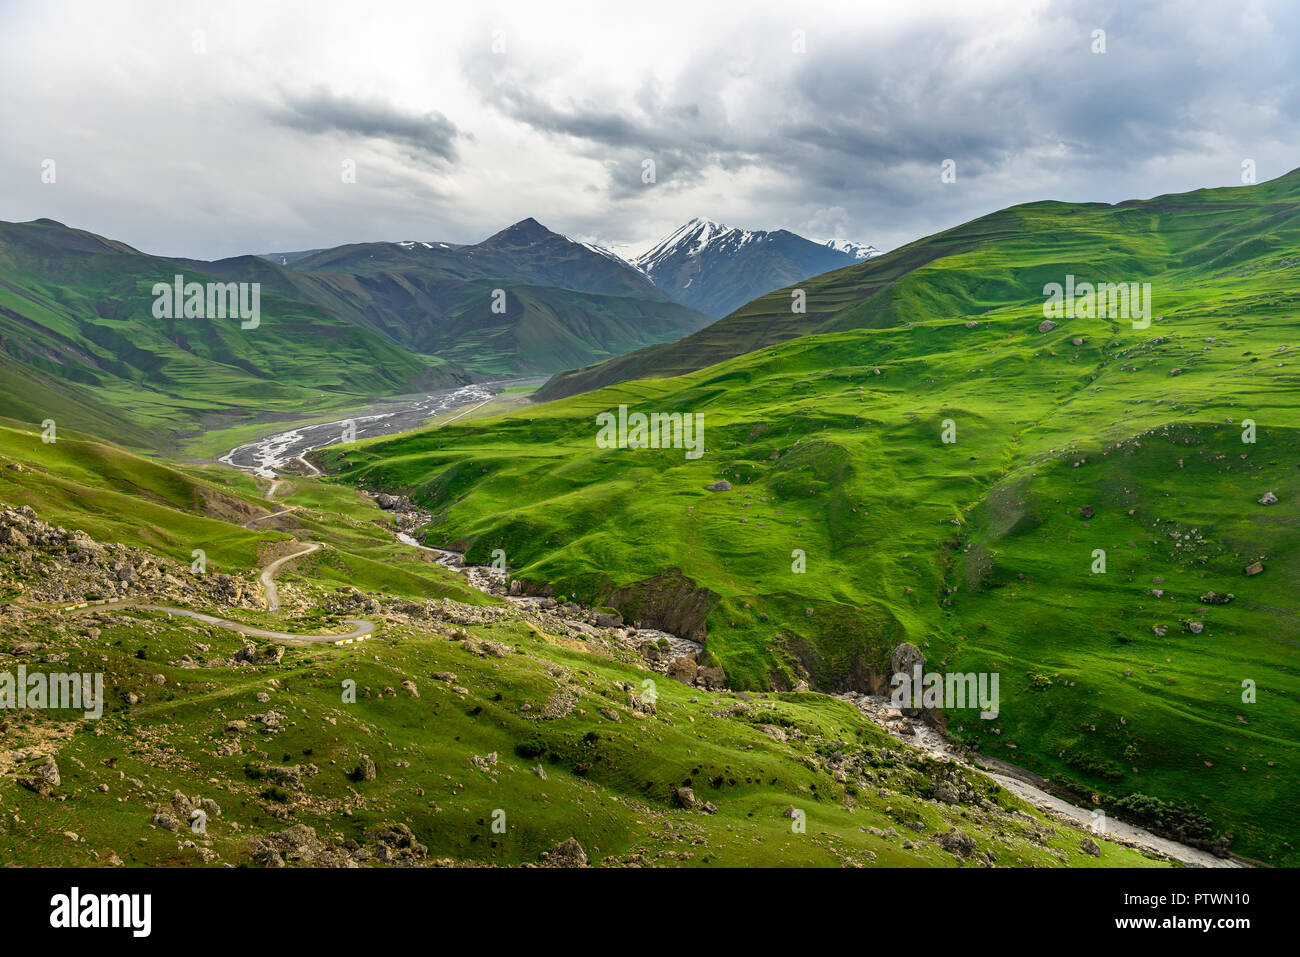 L'Azerbaïdjan paysage de la nature, belles montagnes et collines dans le nord de l'Azerbaïdjan près de Quba dans le village Khinaluq Banque D'Images